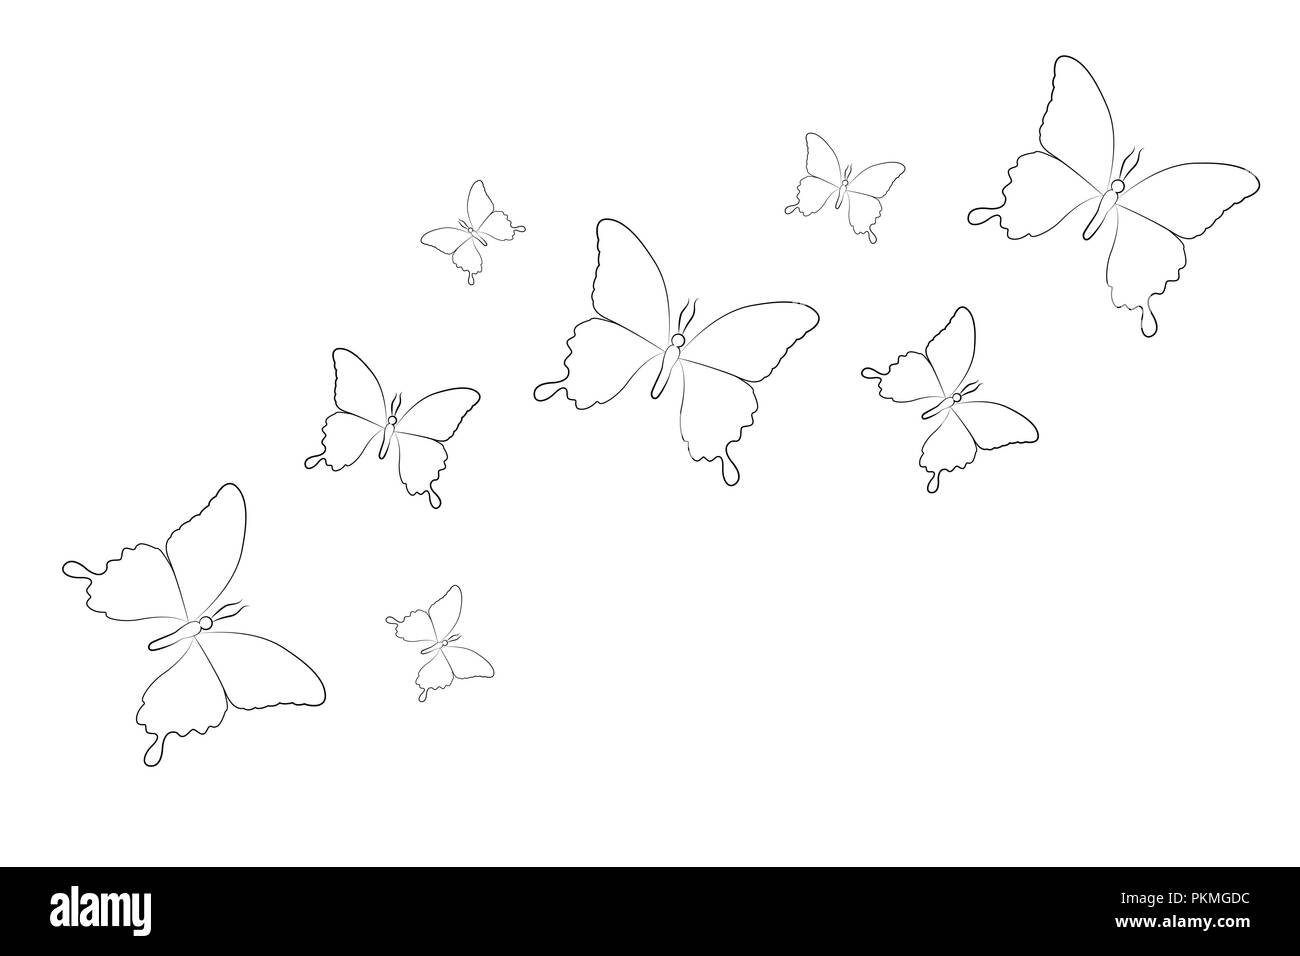 Juego de dibujo de líneas aisladas de mariposas sobre un fondo blanco ilustración vectorial EPS10 Ilustración del Vector